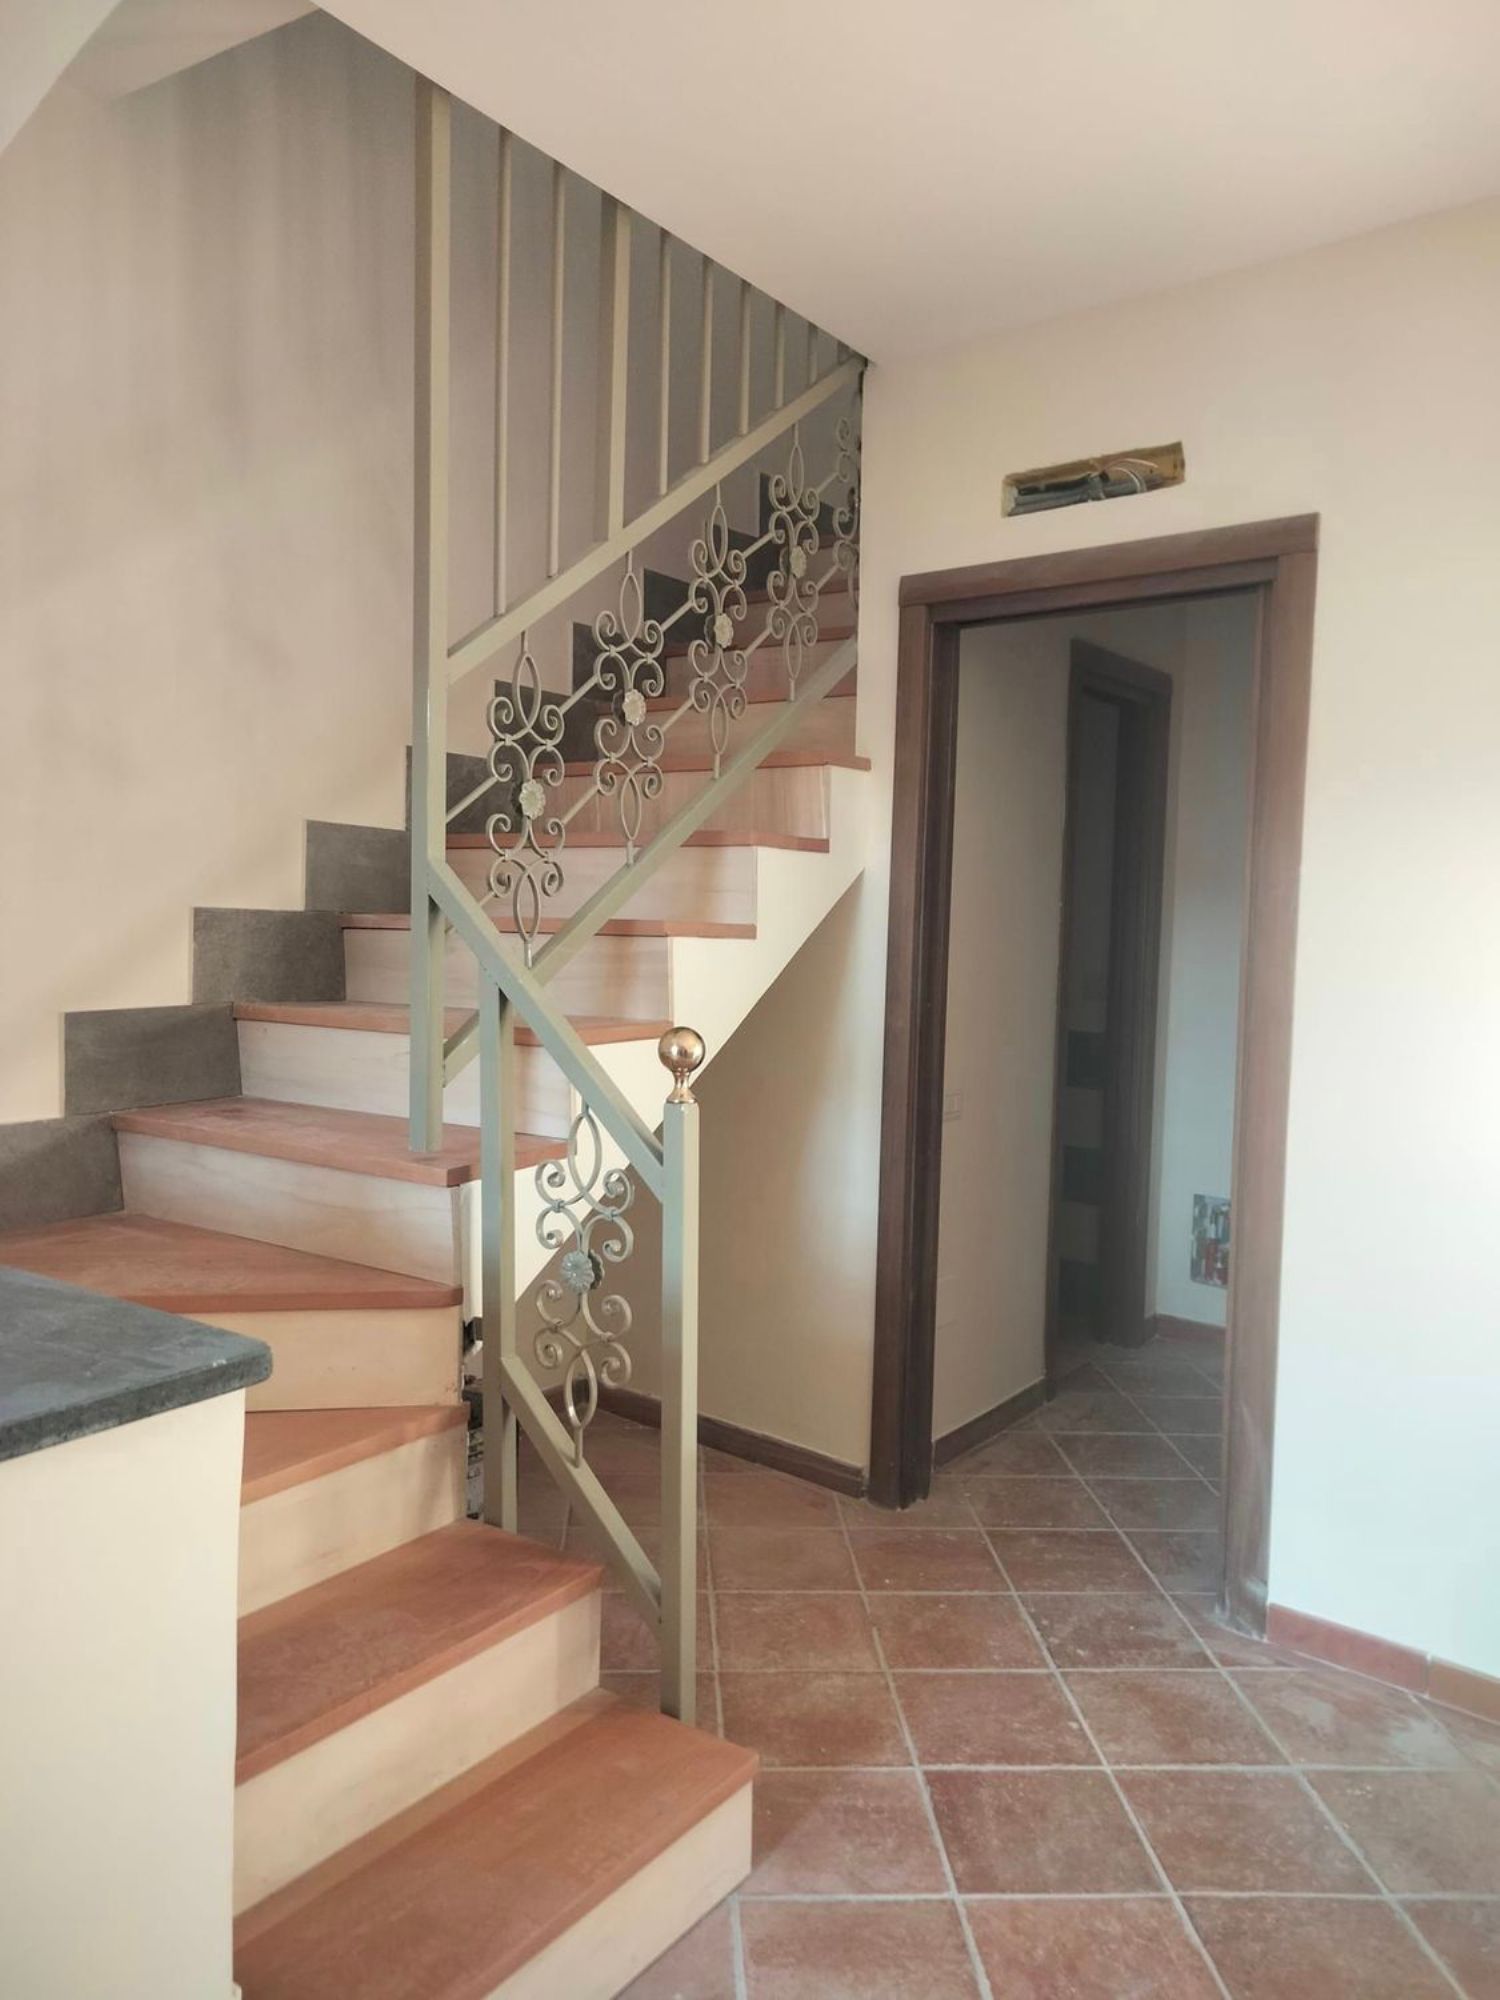 Duplex in vendita a Cava de' Tirreni, 3 locali, prezzo € 135.000 | PortaleAgenzieImmobiliari.it